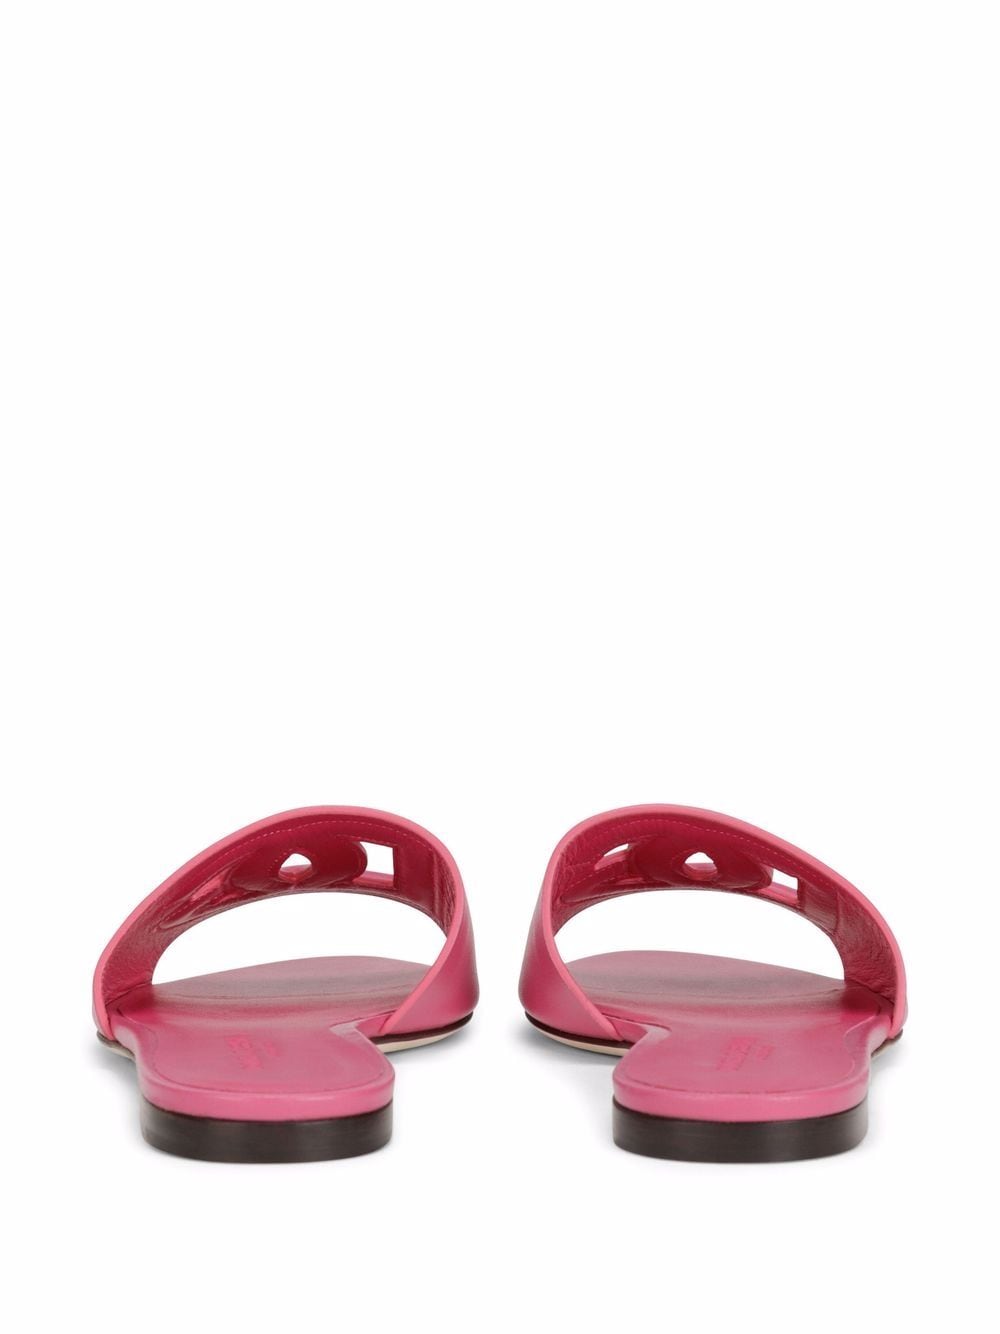 Pink DG-logo leather sandals<BR/><BR/><BR/>